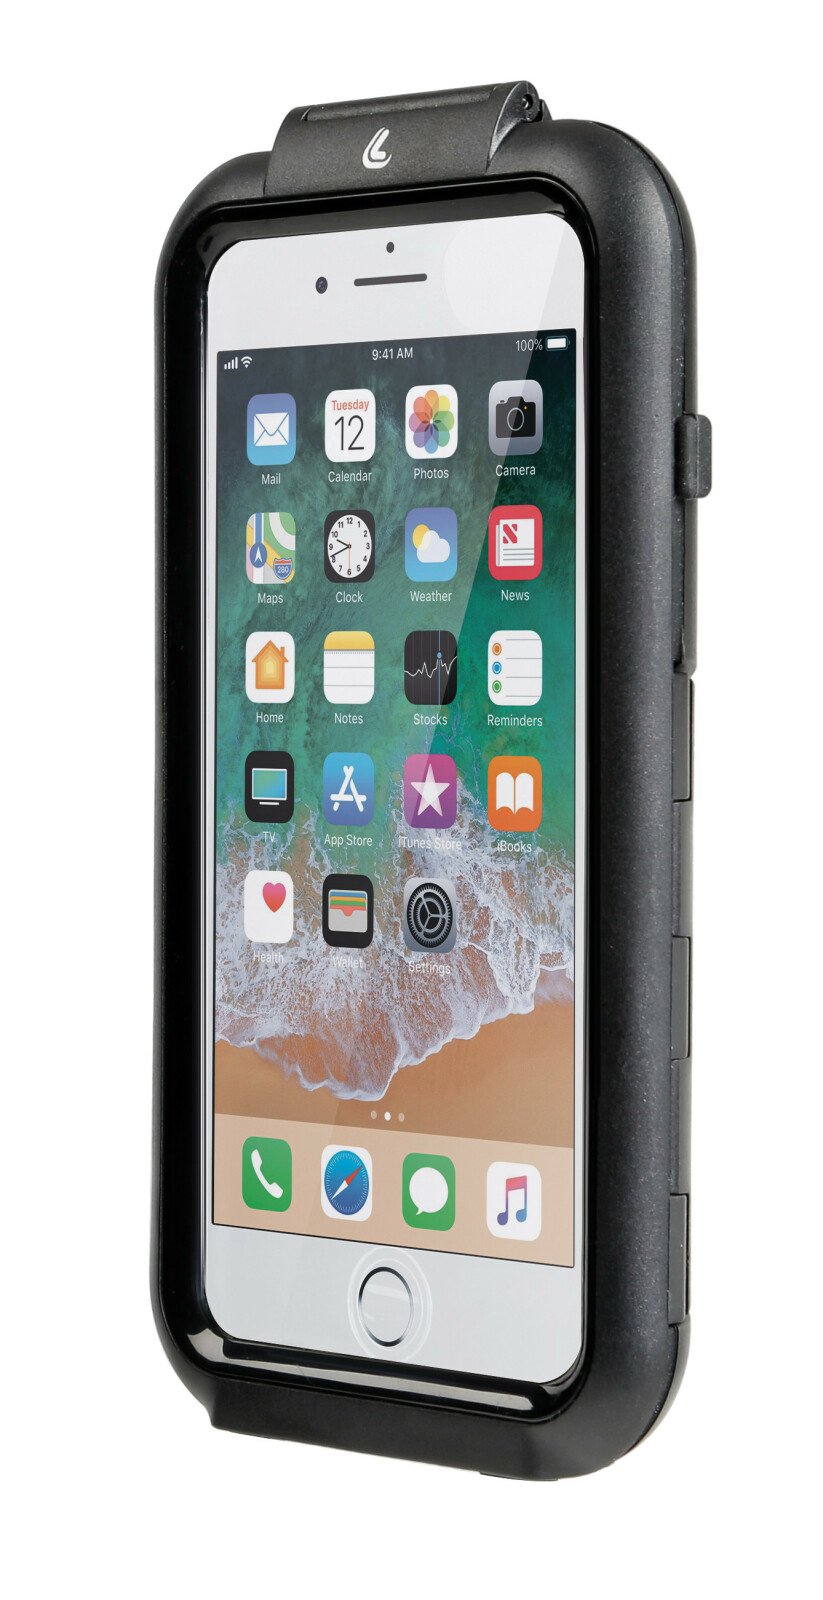 Opti Case, hard case for smartphone - iPhone 6Plus/7Plus/8Plus thumb